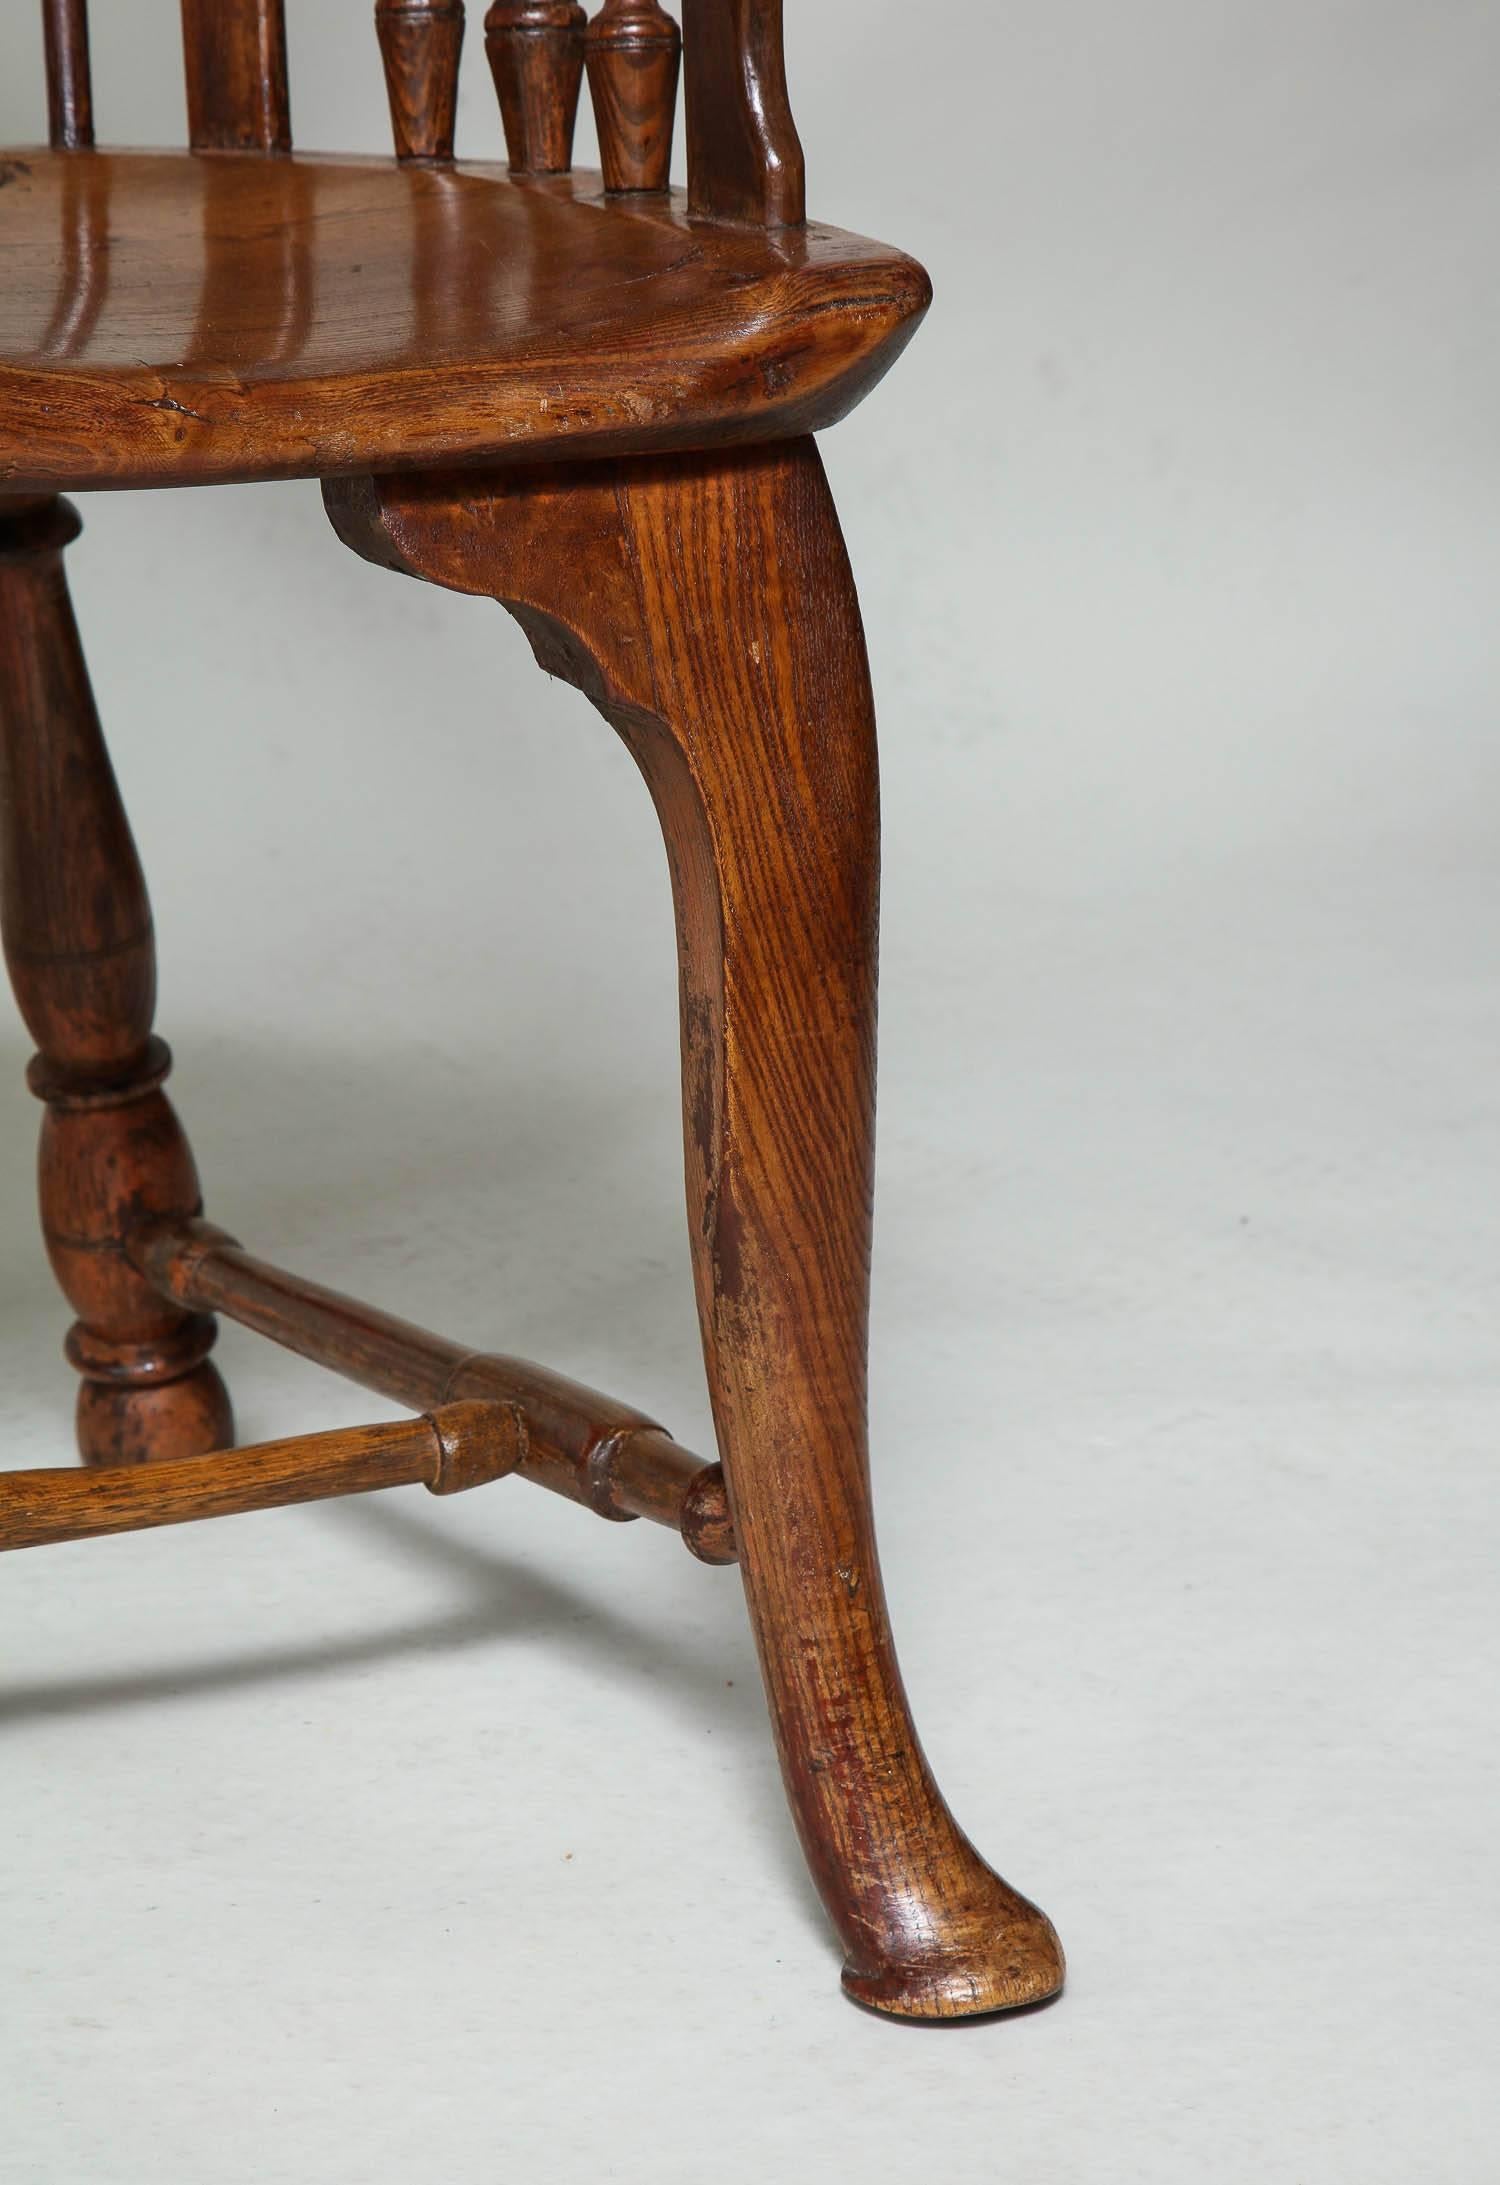 L'un des plus beaux fauteuils à dossier peigne de style Windsor du XVIIIe siècle que l'on puisse trouver sur le marché, cet exemplaire présente une traverse festonnée et façonnée au-dessus d'un dosseret percé de tracés gothiques, des traverses